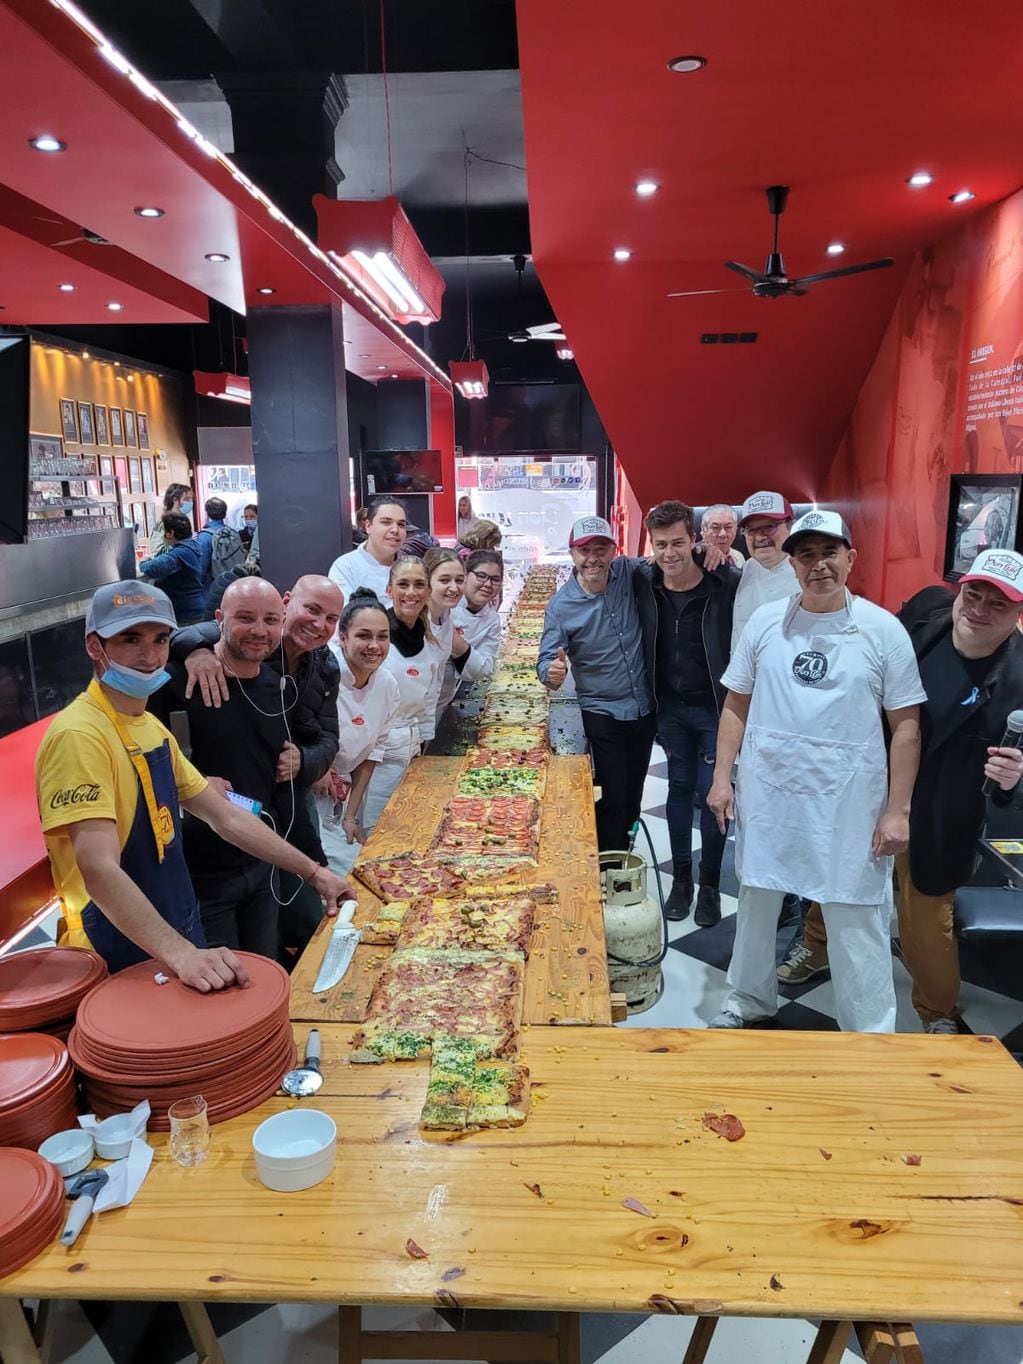 La Pizzería Don Luis rompió su propio récord con la pizza más larga de Córdoba.